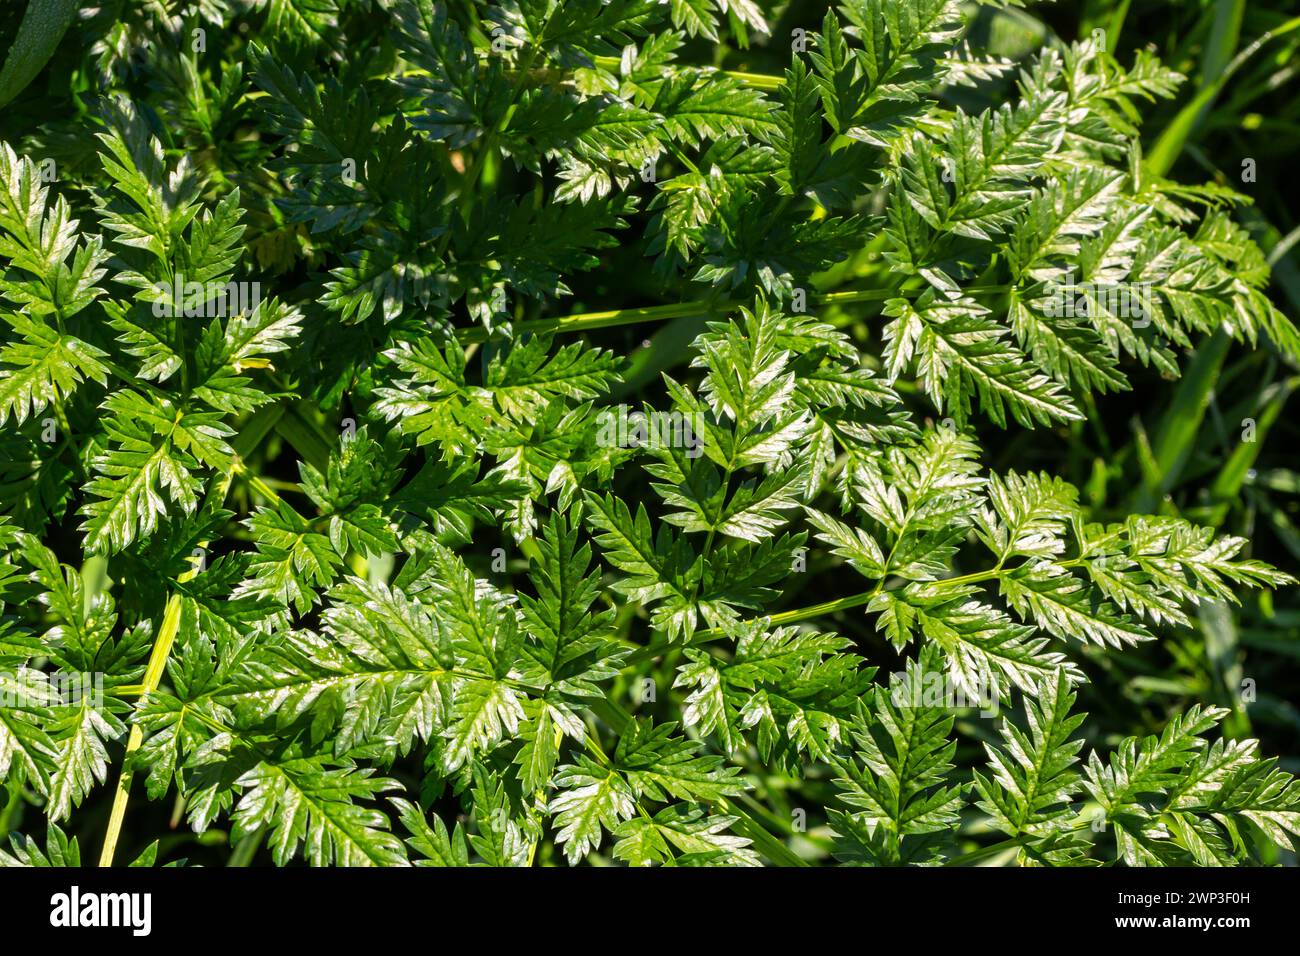 Grüne Blätter einer giftigen Pflanze Conium maculatum Hemlock Nahaufnahme. Das Konzept der Textur von natürlichen Mustern, Ornamenten. Stockfoto